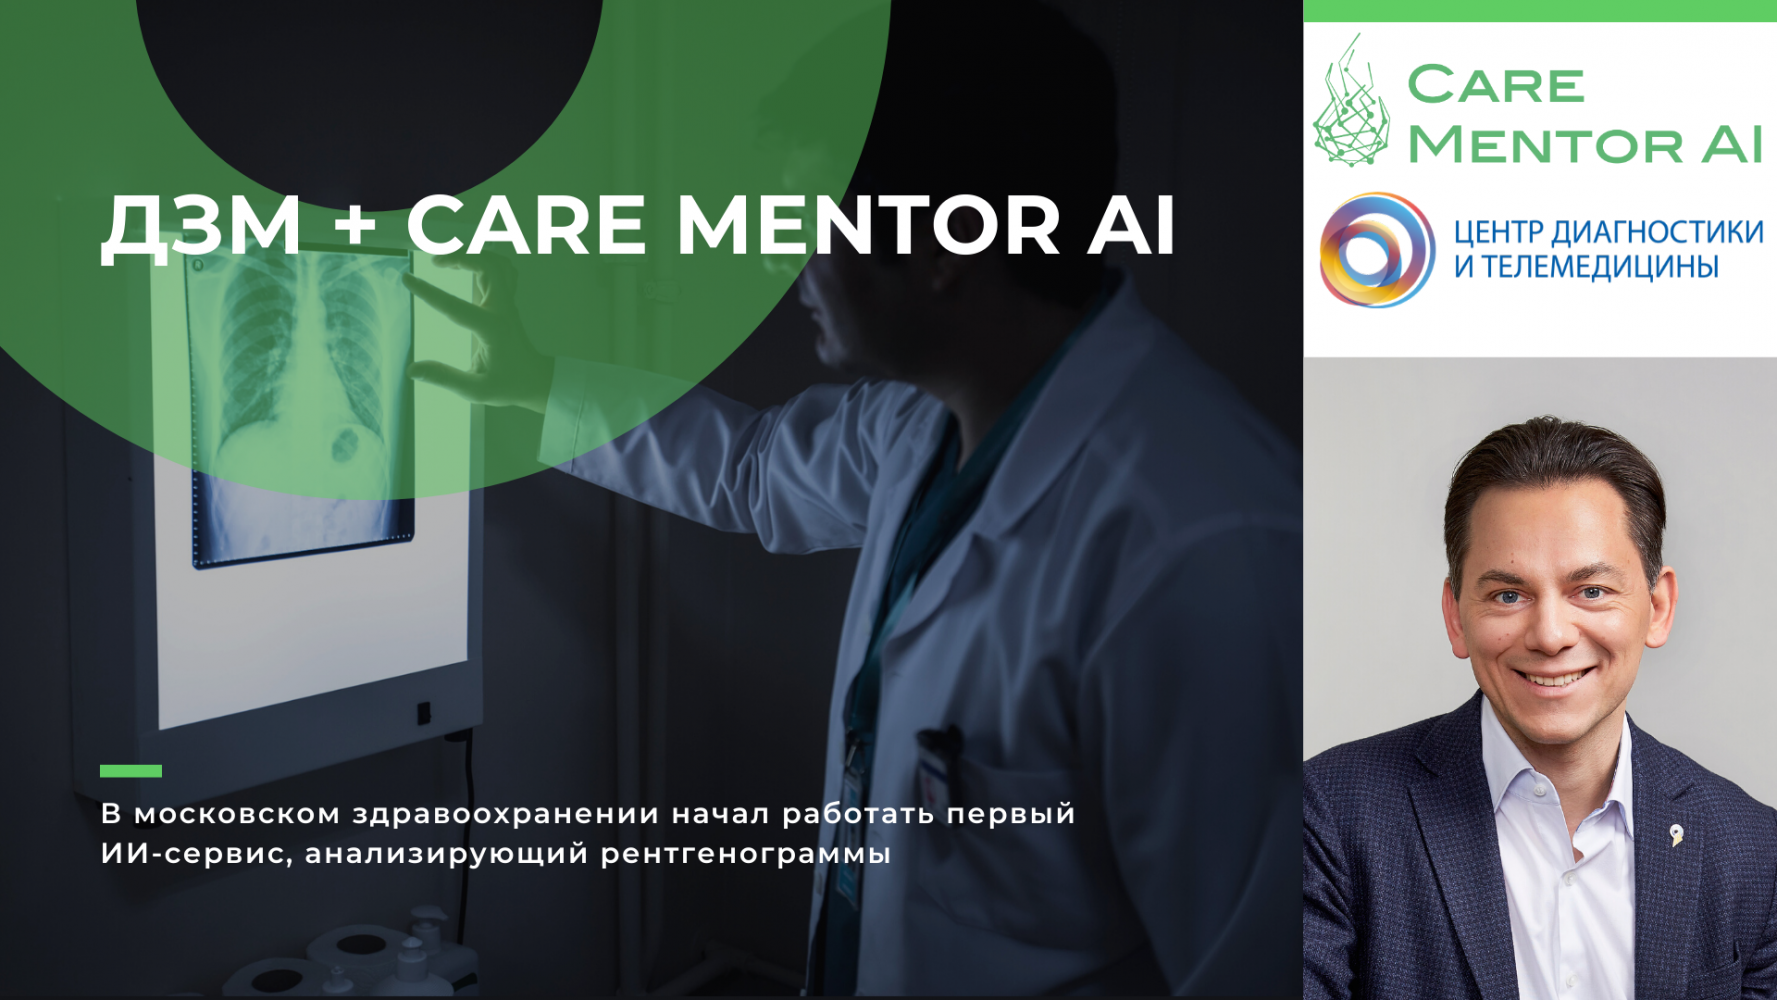 В московском здравоохранении начал работать первый ИИ-сервис, анализирующий рентгенограммы